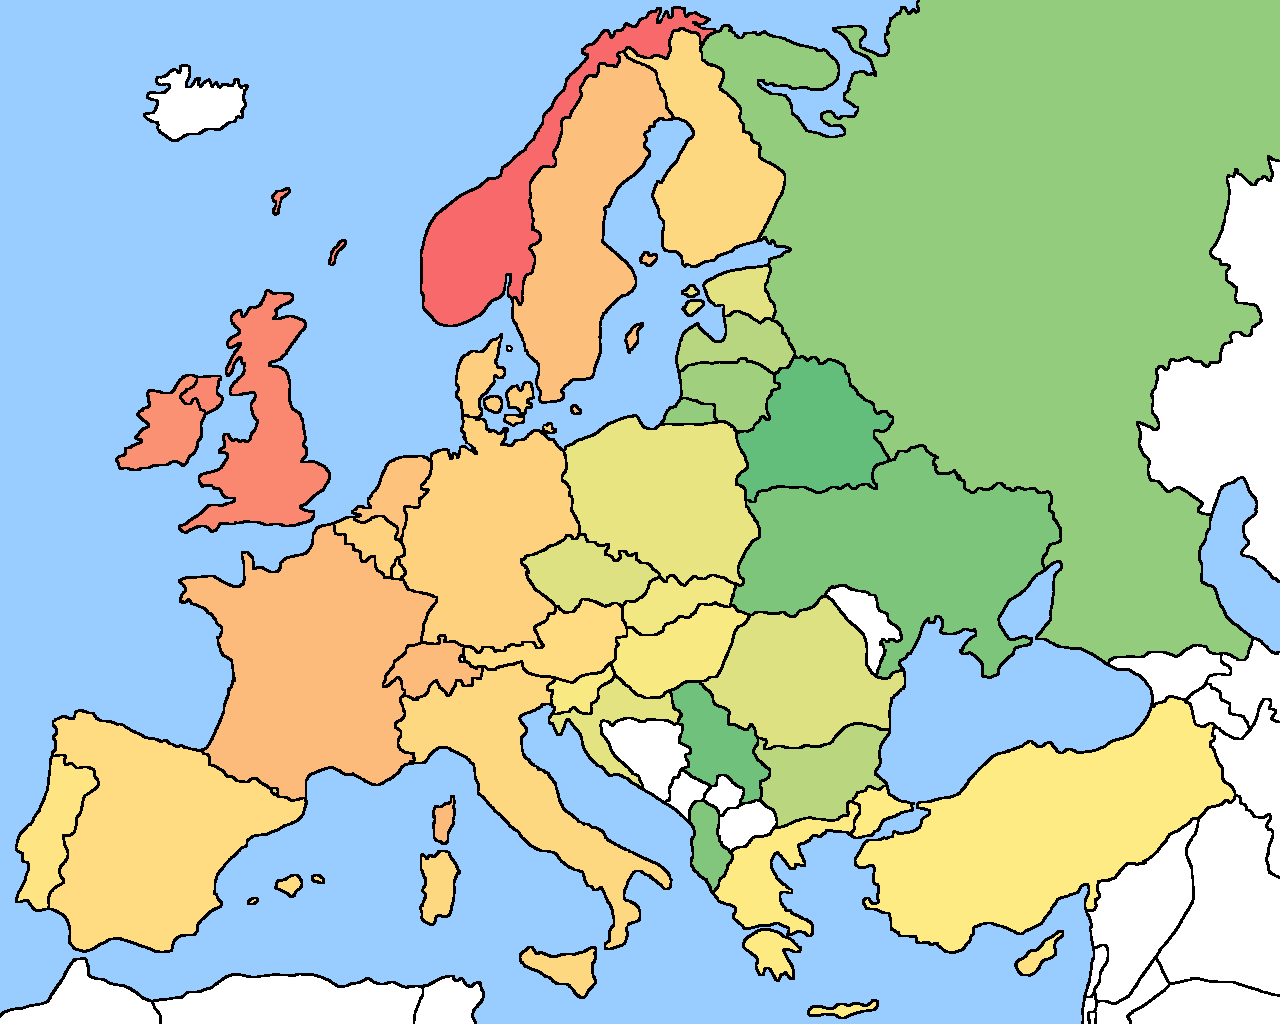 Juegos de Geografía | Juego de Países de Europa en el mapa (6) | Cerebriti